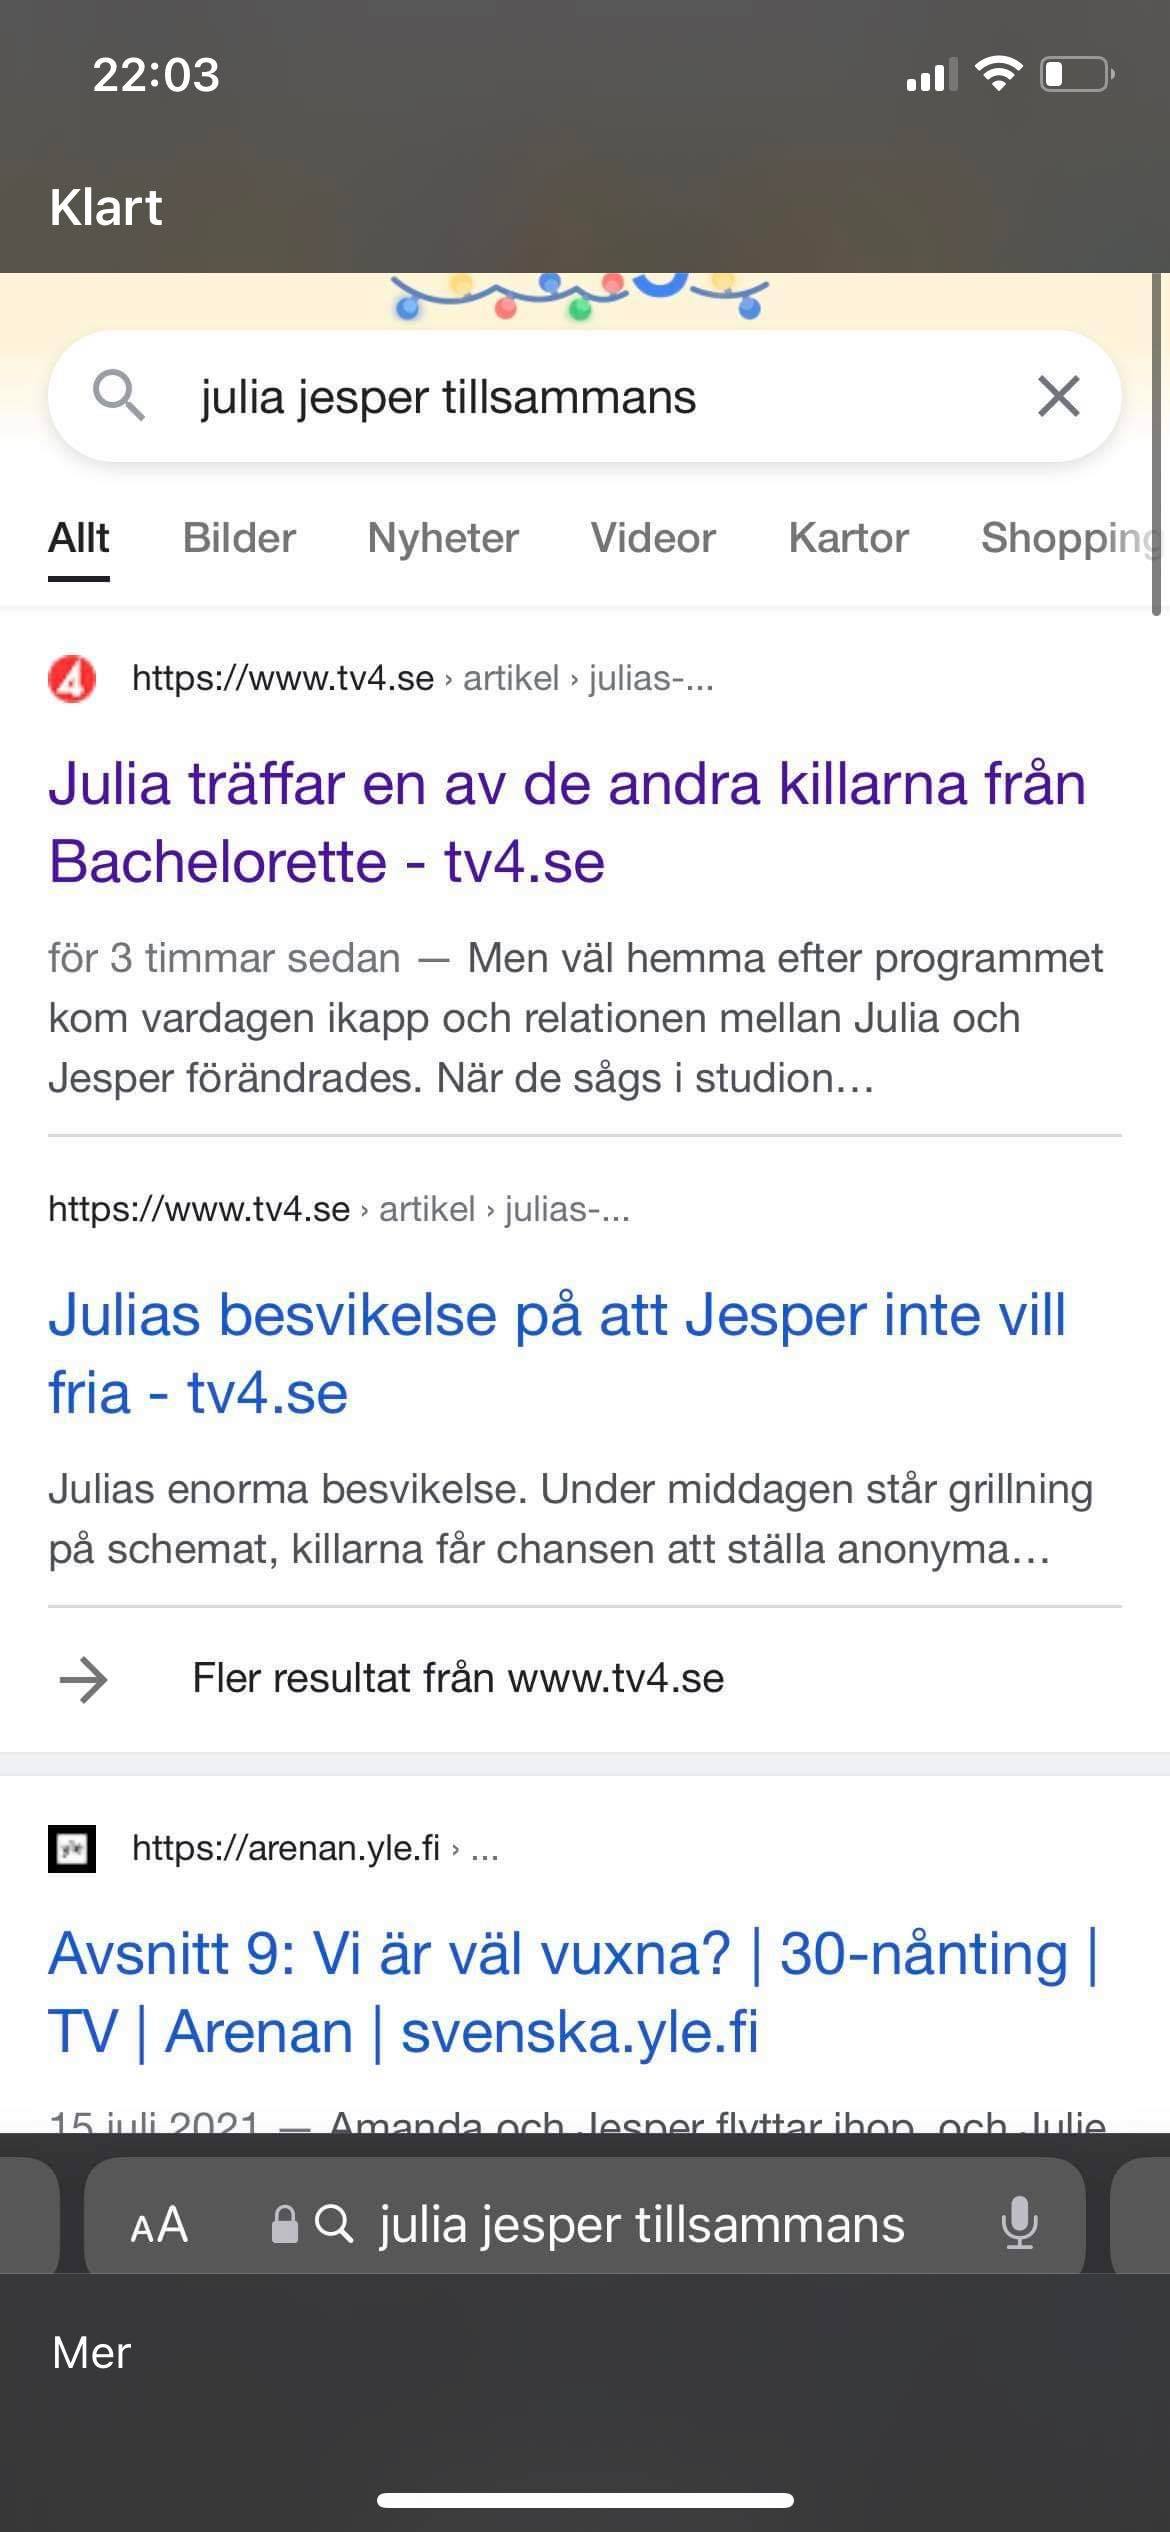 Julia Jesper tillsammans?